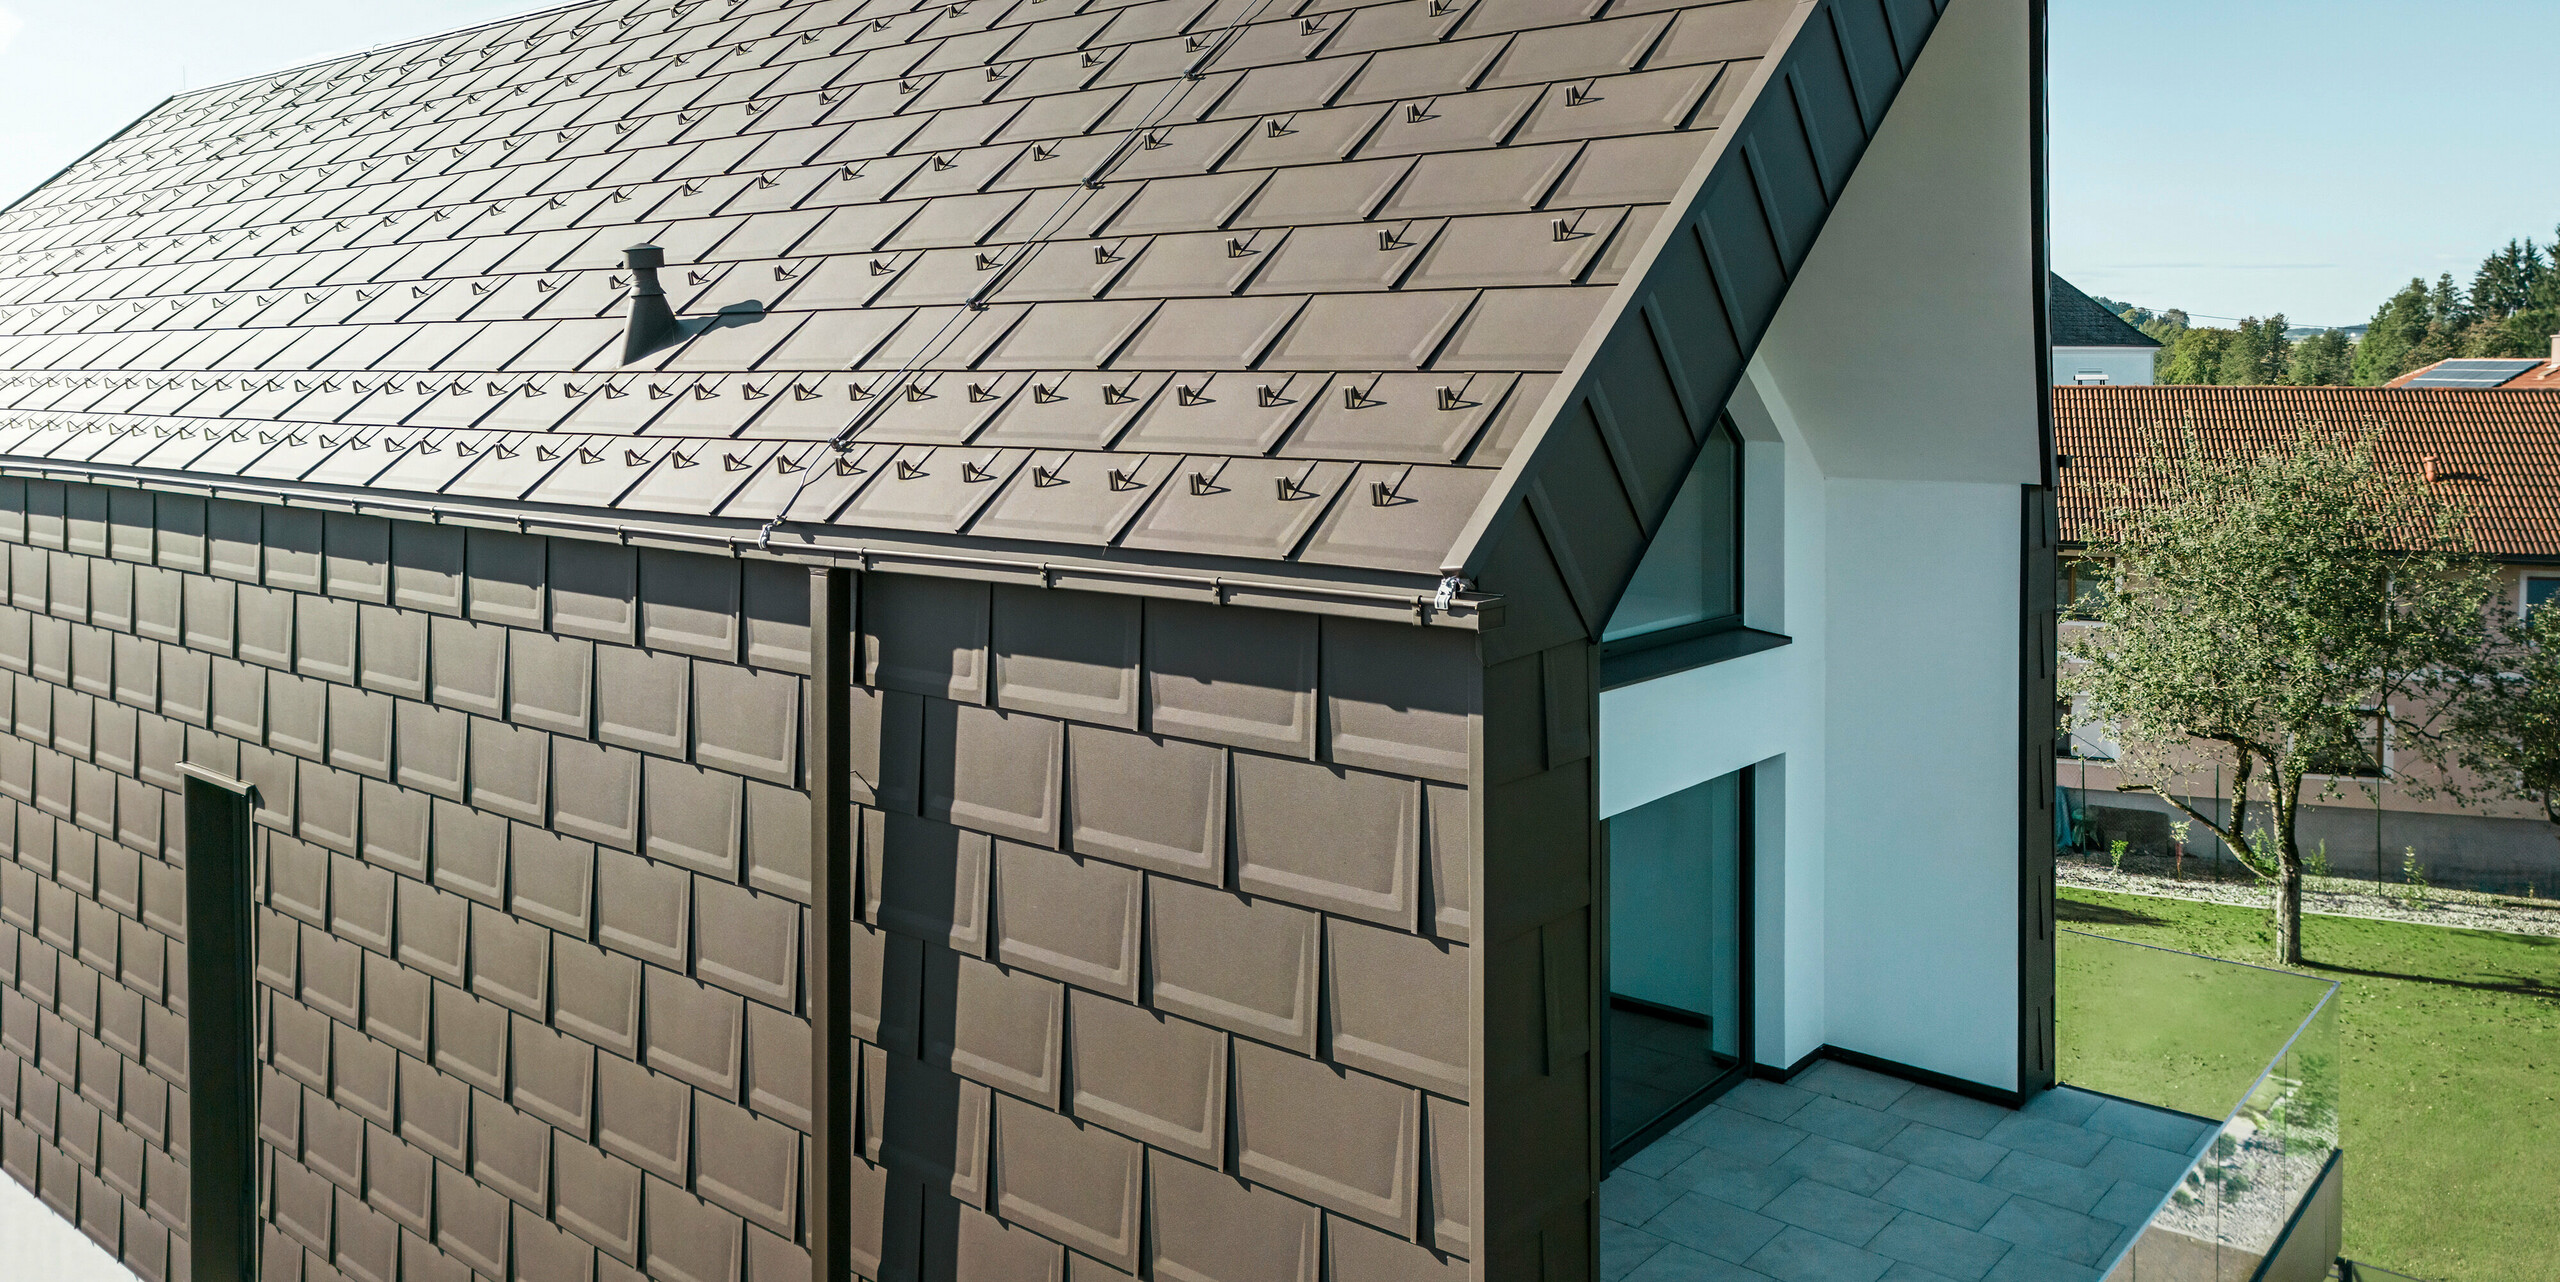 Eine perspektivische Ansicht von Dach und Fassade eines modernen Einfamilienhauses in Neukirchen, Österreich. Die PREFA R.16 Dachplatte im Braunton P.10 bietet eine ästhetische und funktionale Dacheindeckung, die sich perfekt in die architektonische Gestaltung des Hauses einfügt. Der scharfe First des Daches und die präzise Anordnung der Dachplatten zeigen die Qualität von PREFA. Die kleinformatigen Aluminiumprodukte fügen sich perfekt in die weiß verputzte Fassade und die umgebende grüne Landschaft ein.